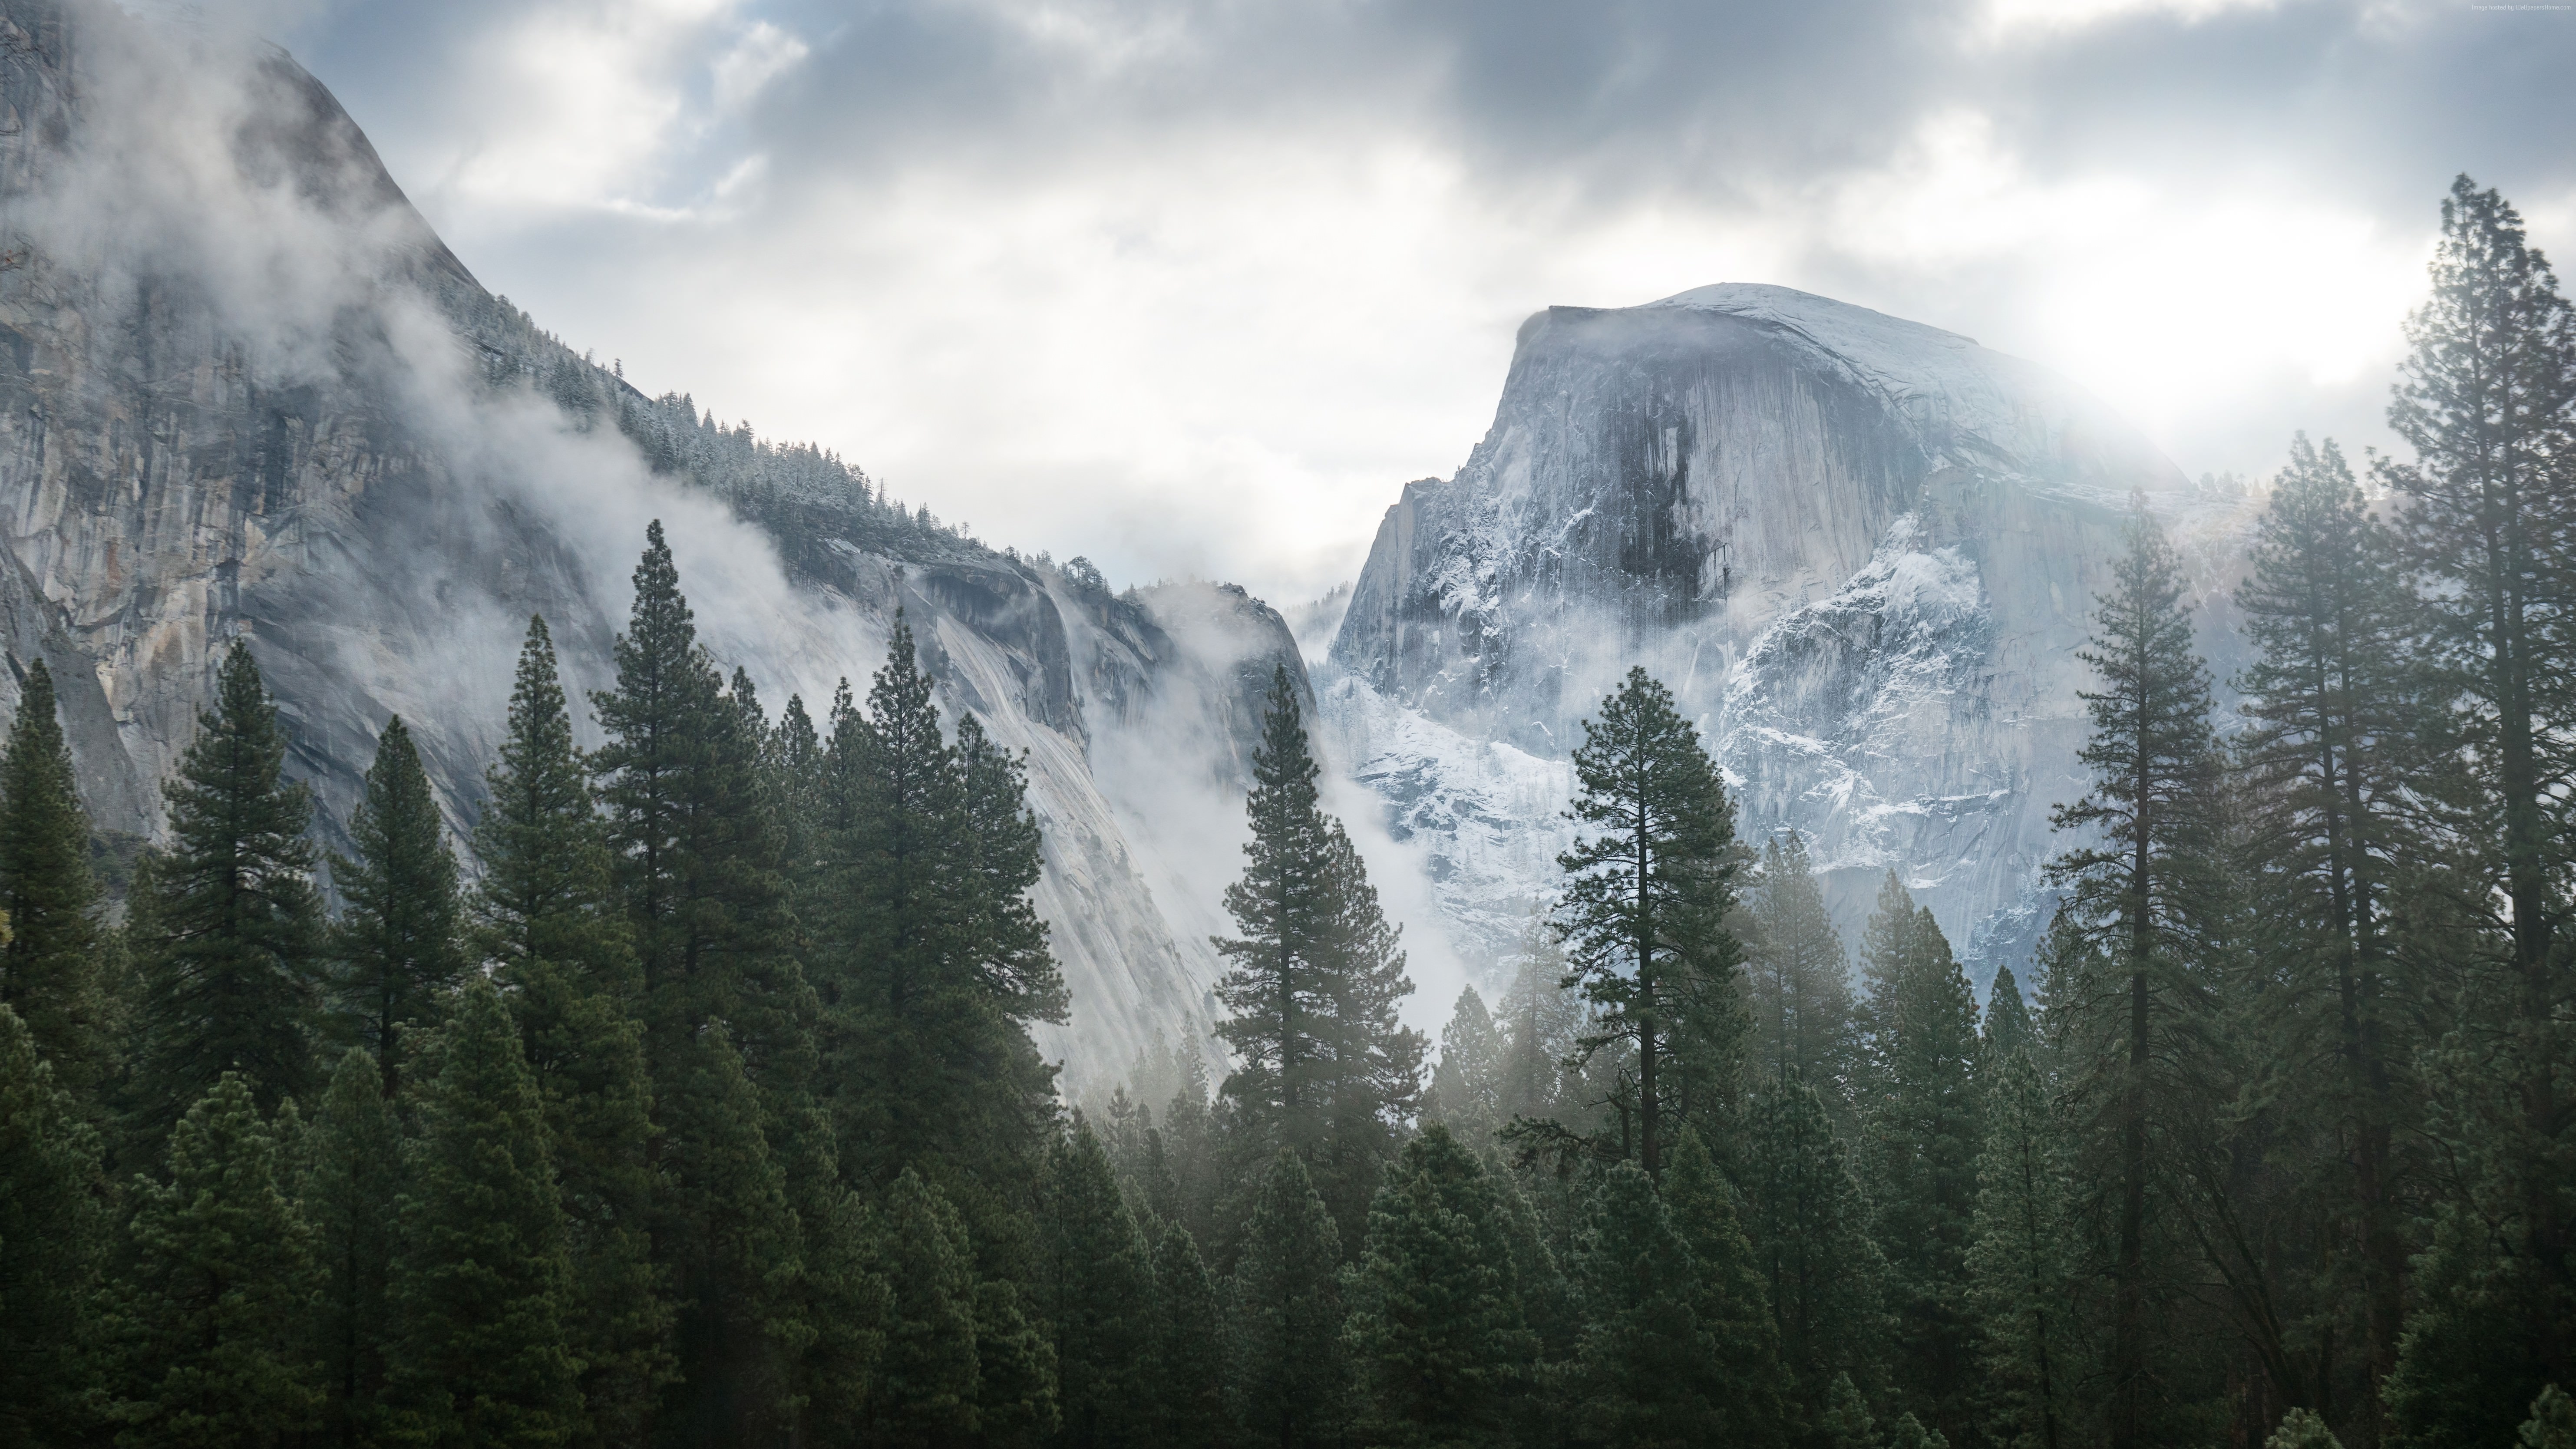 macbook pro wallpaper hd,montagna,natura,paesaggio naturale,catena montuosa,nebbia